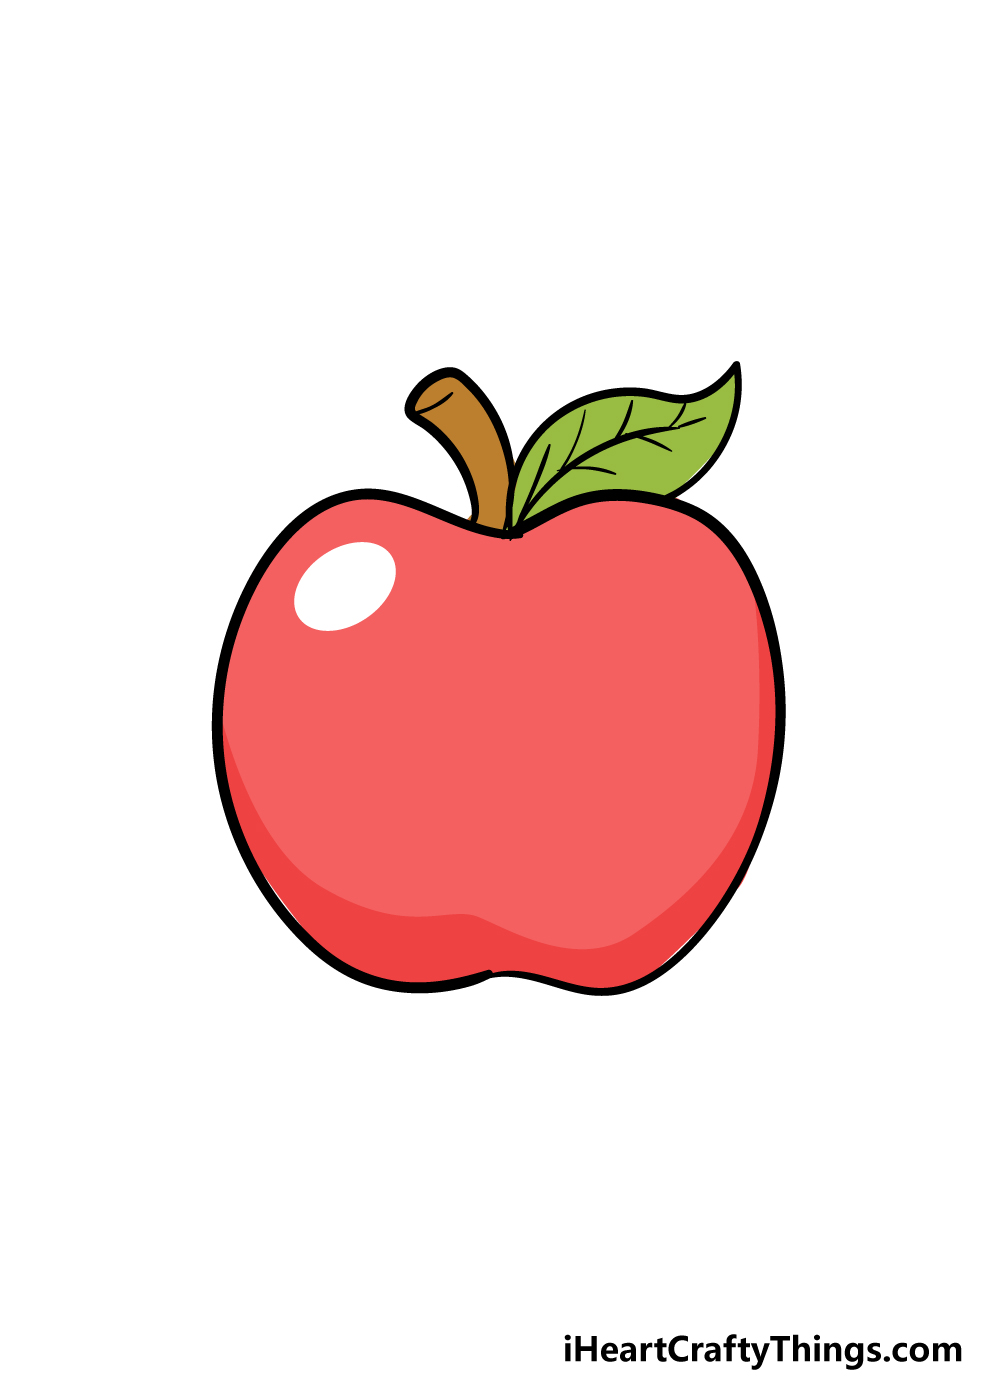 Apple 6 - Hướng dẫn chi tiết cách vẽ quả táo đơn giản với 6 bước cơ bản